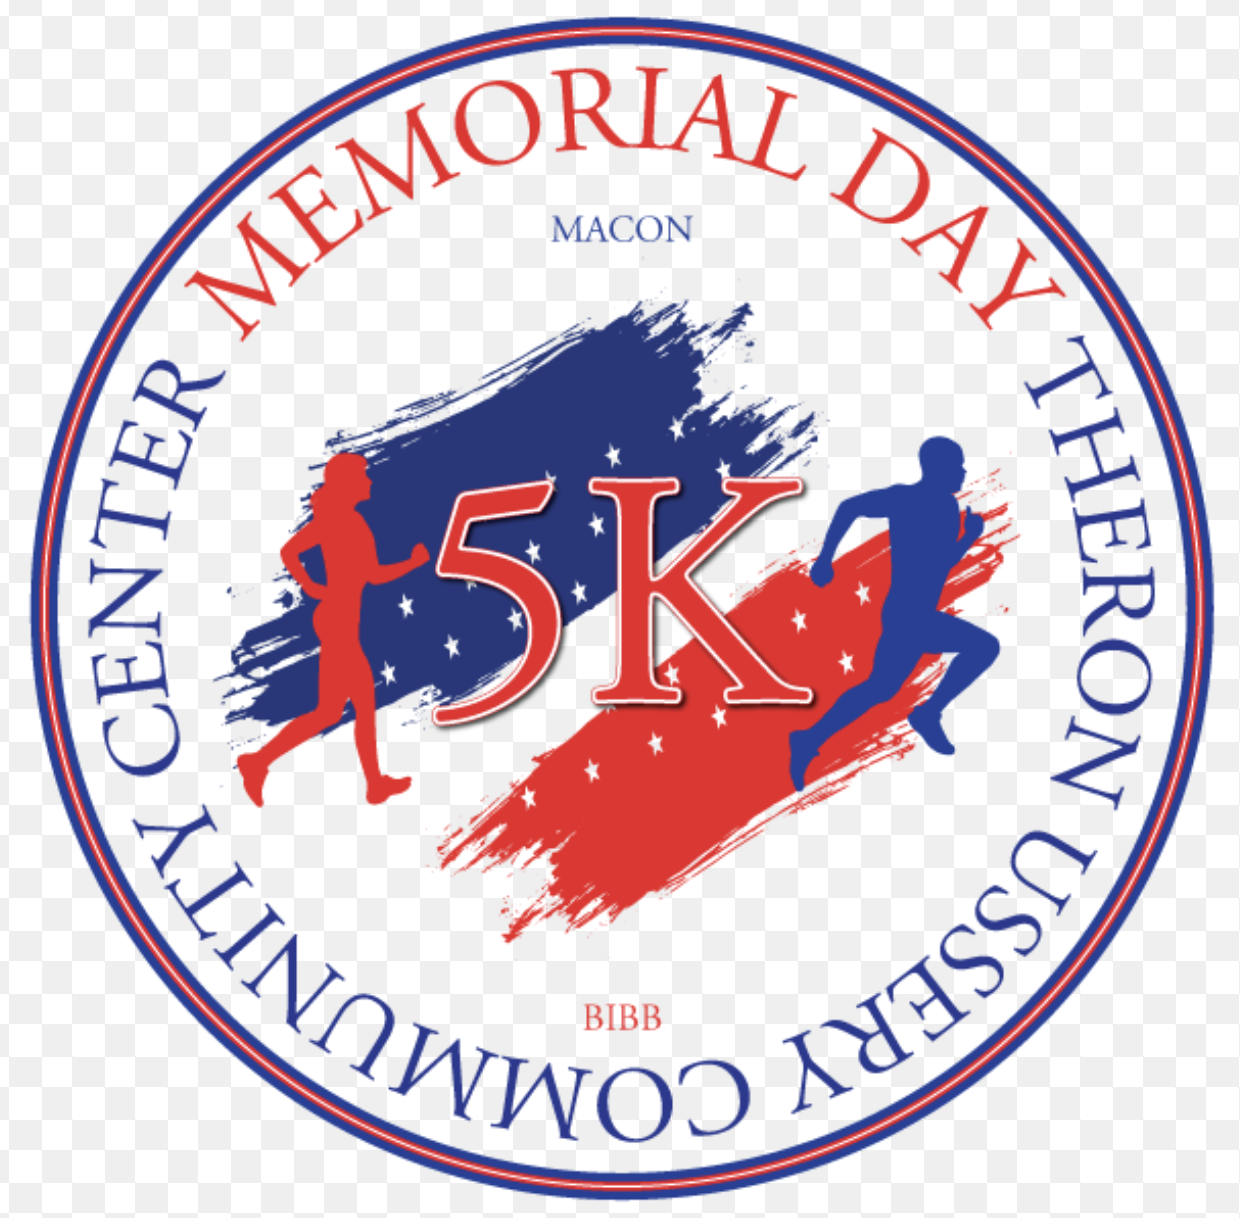 Memorial Day 5K walk/run